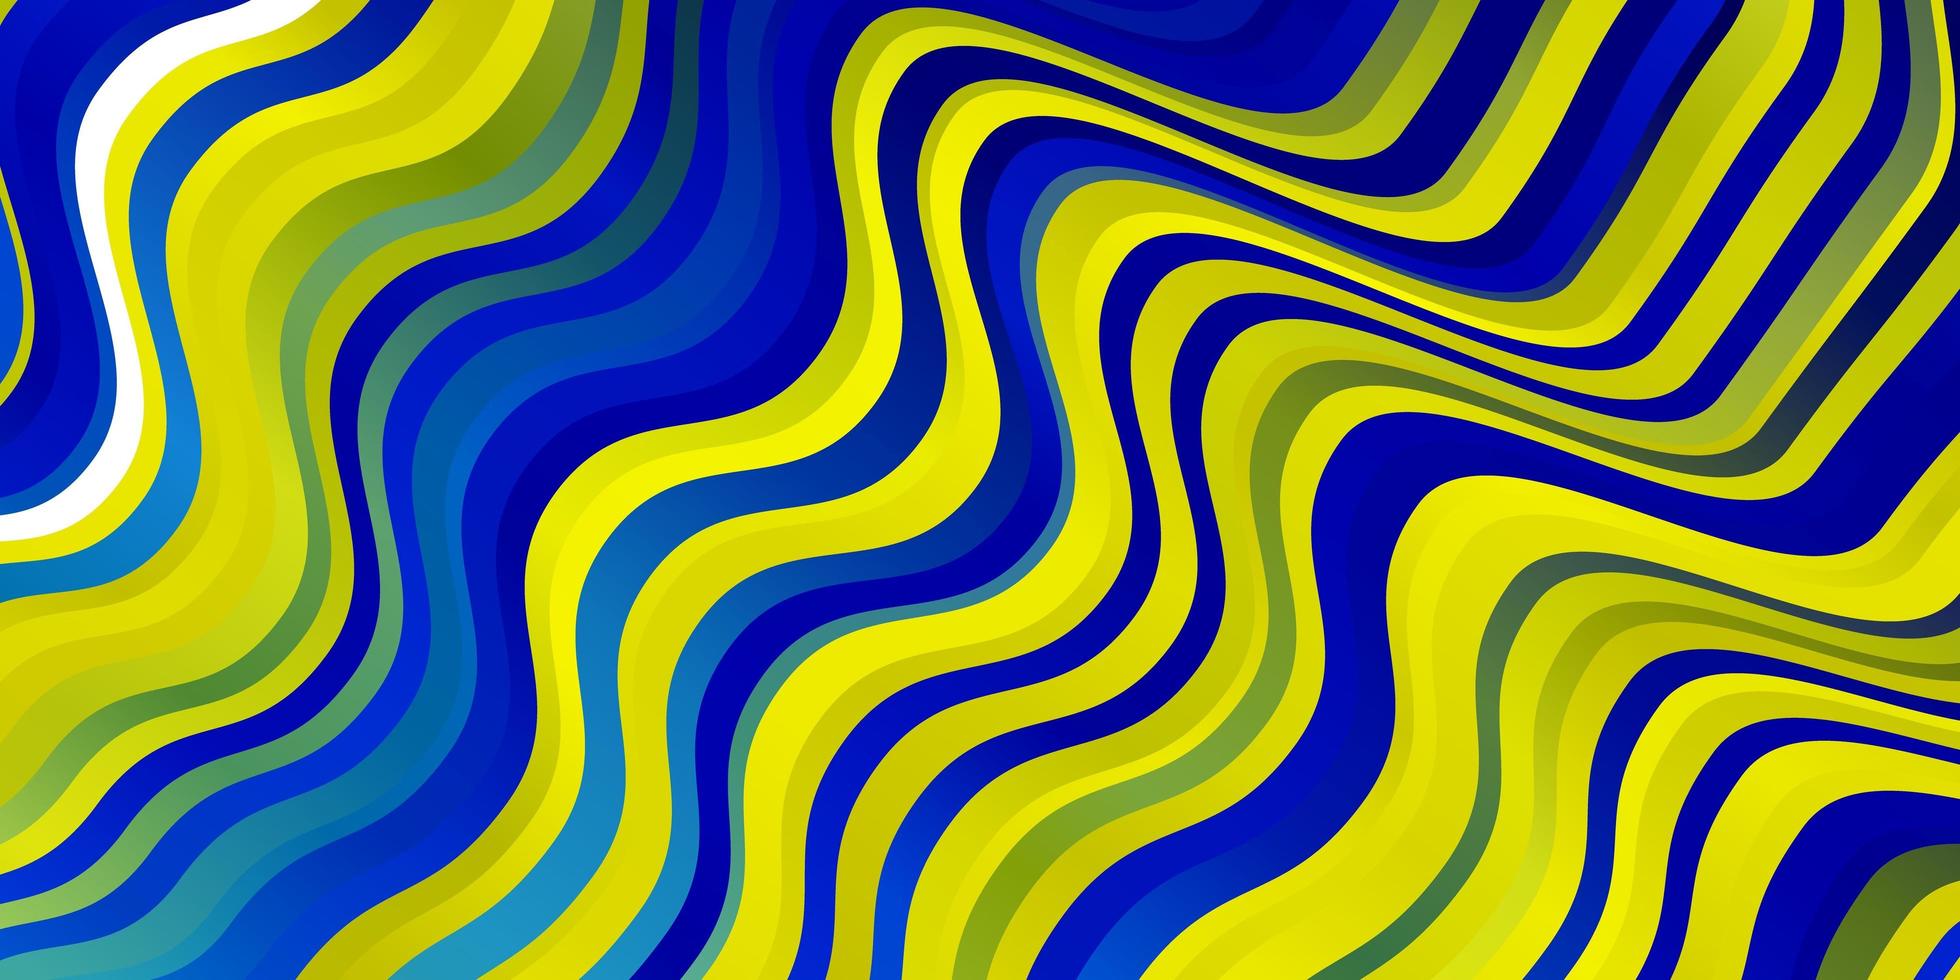 ljusblå, gul vektorstruktur med cirkelbåge. vektor